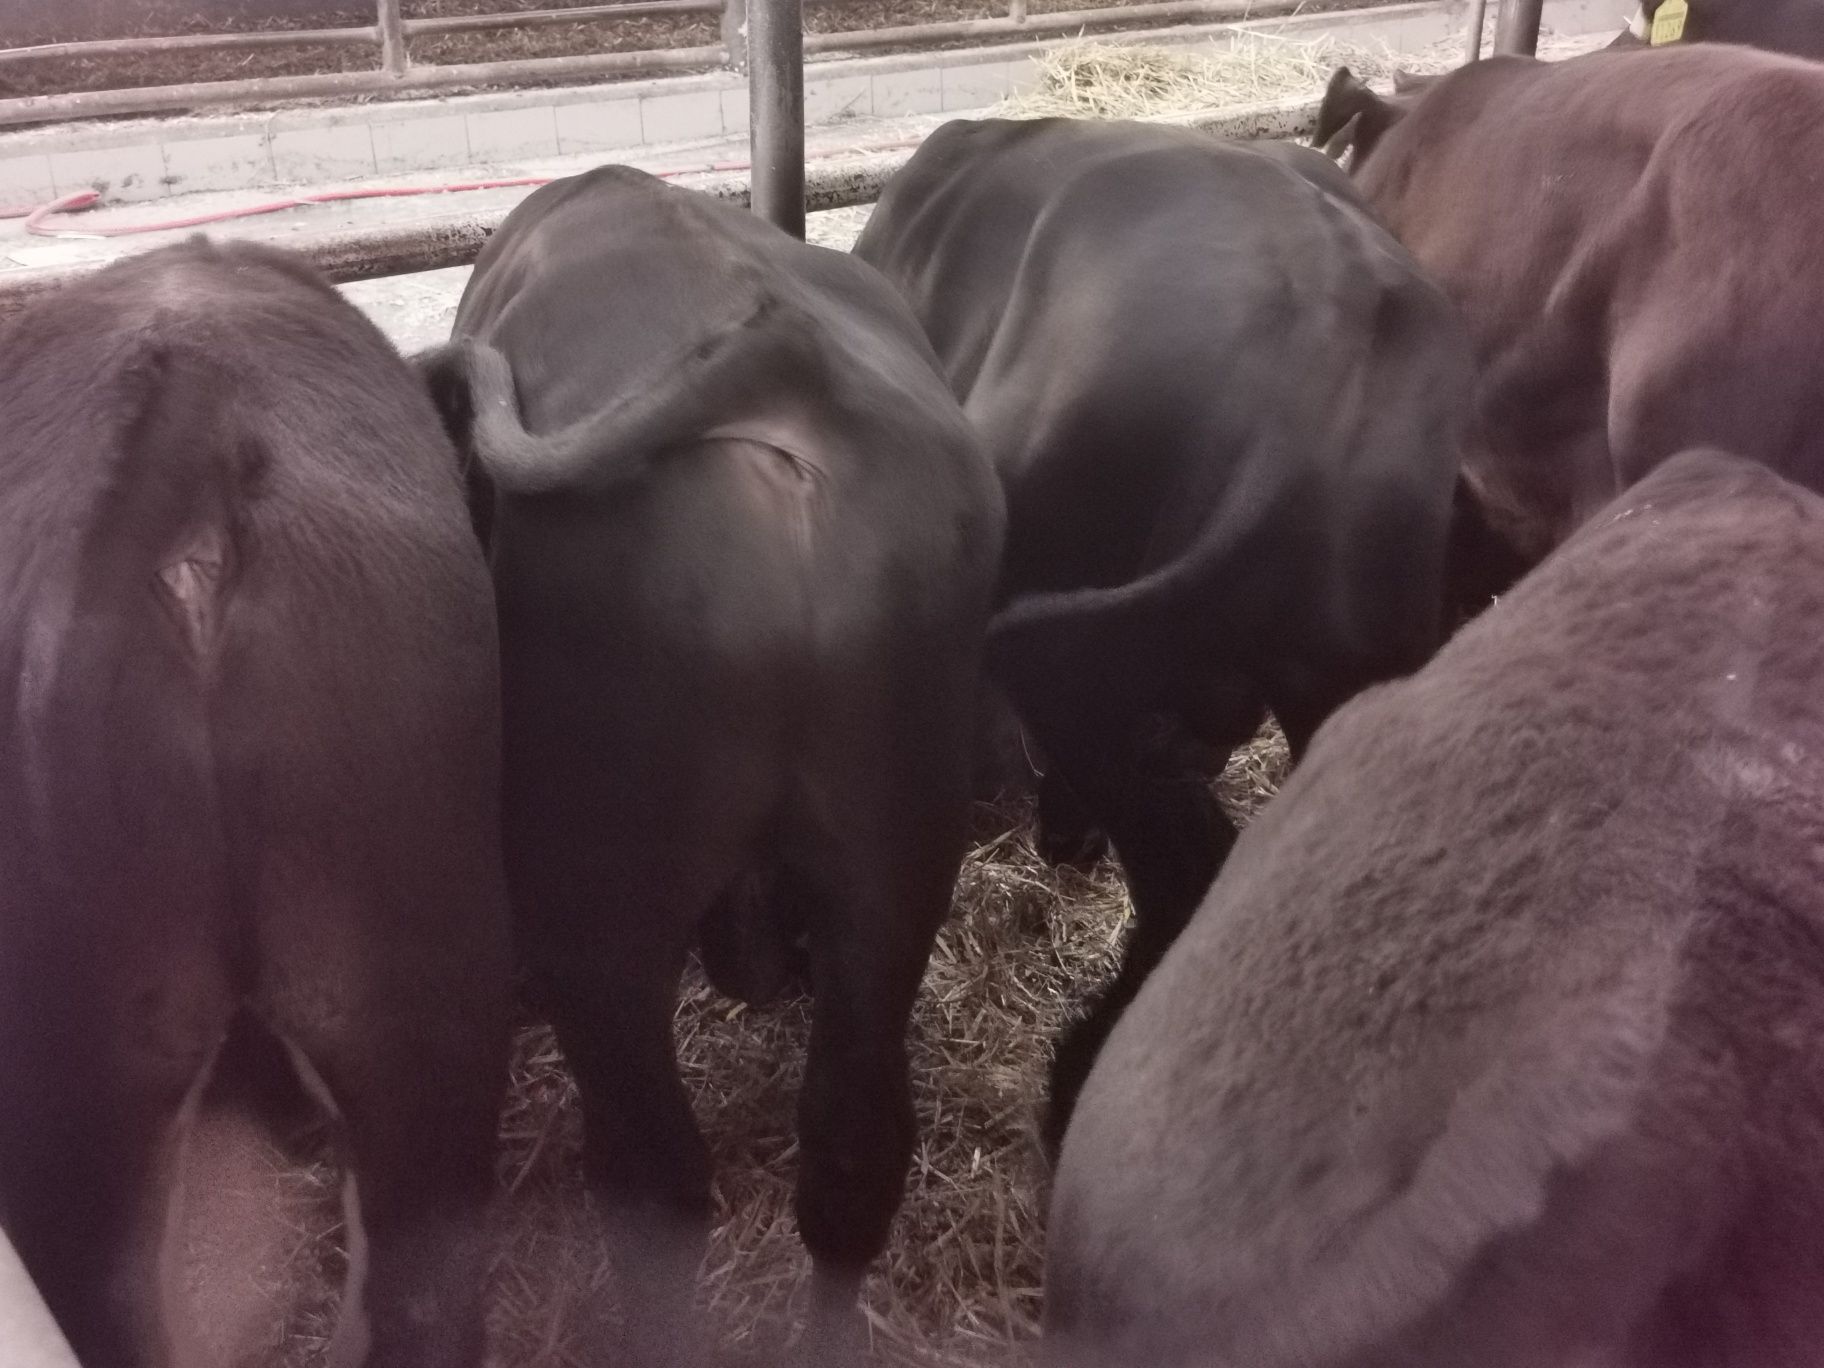 Byczki odsadki mięsne od importera